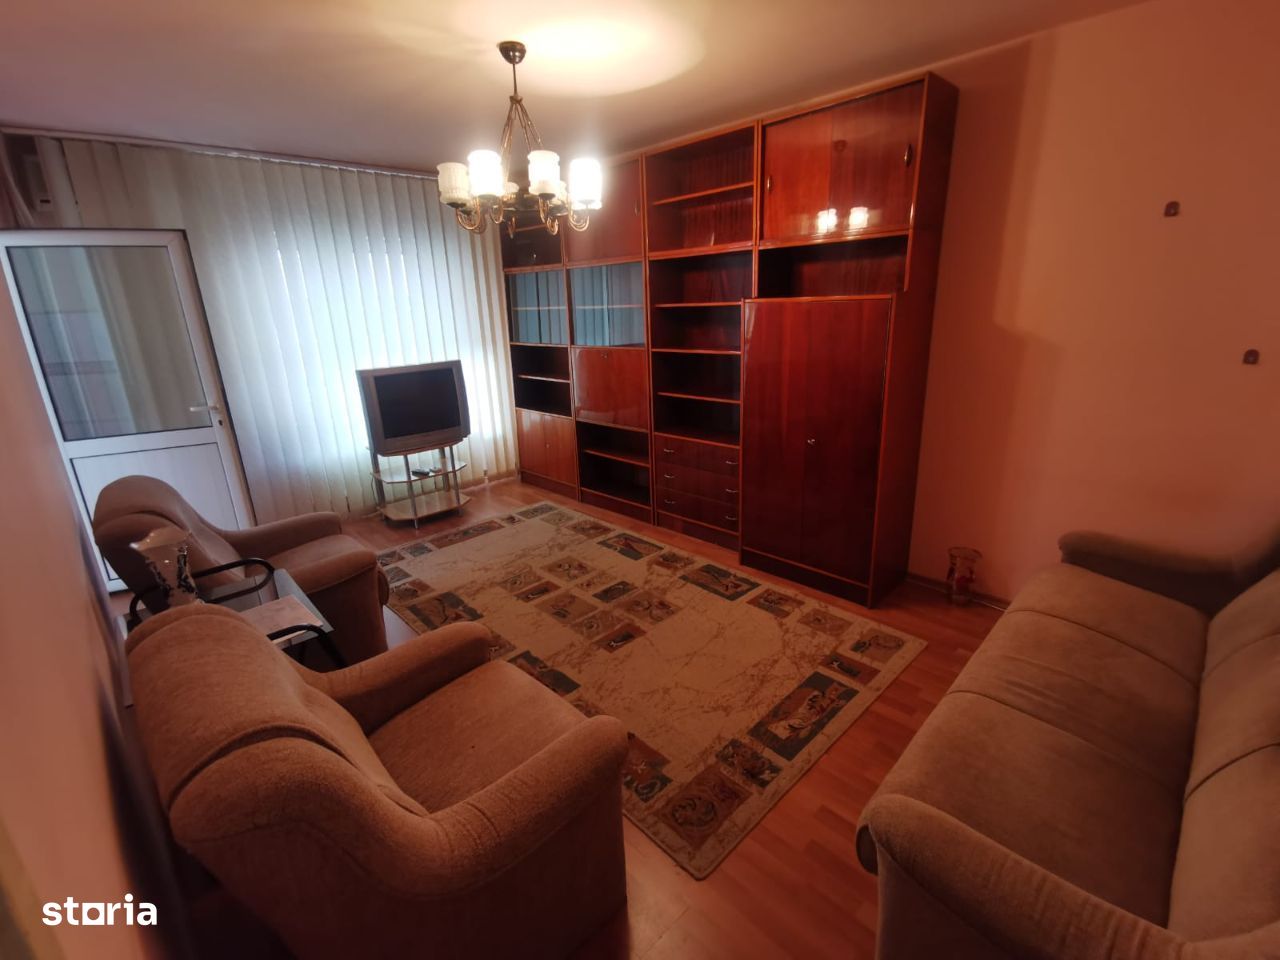 ROANDY-Apartament 3 camere bine compartimentat Blv Republicii